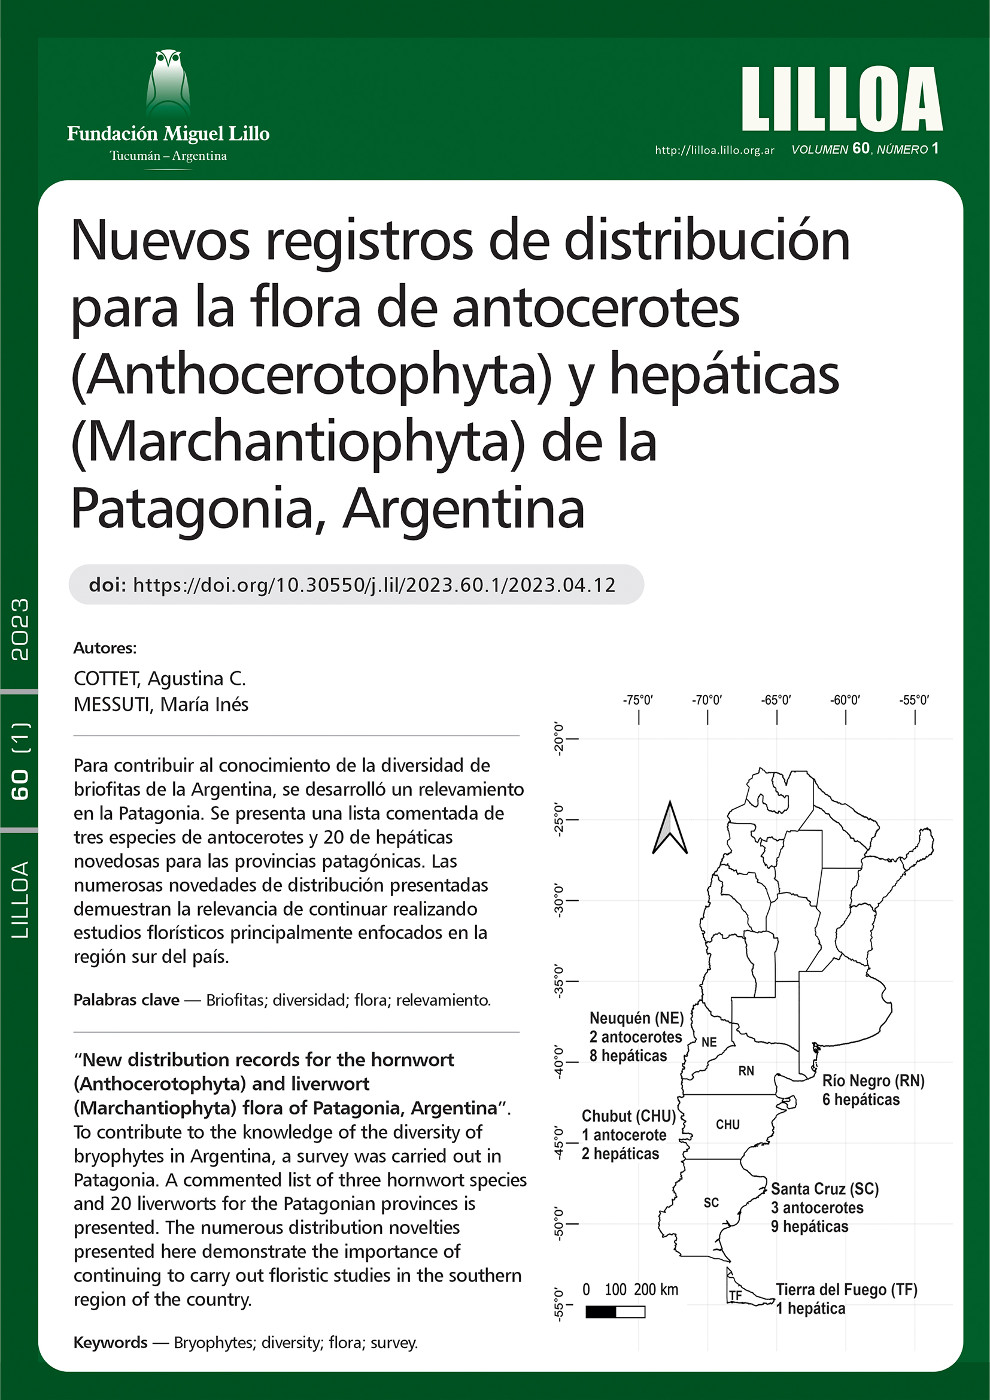 Nuevos registros de distribución para la flora de antocerotes (Anthocerotophyta) y hepáticas (Marchantiophyta) de la Patagonia, Argentina